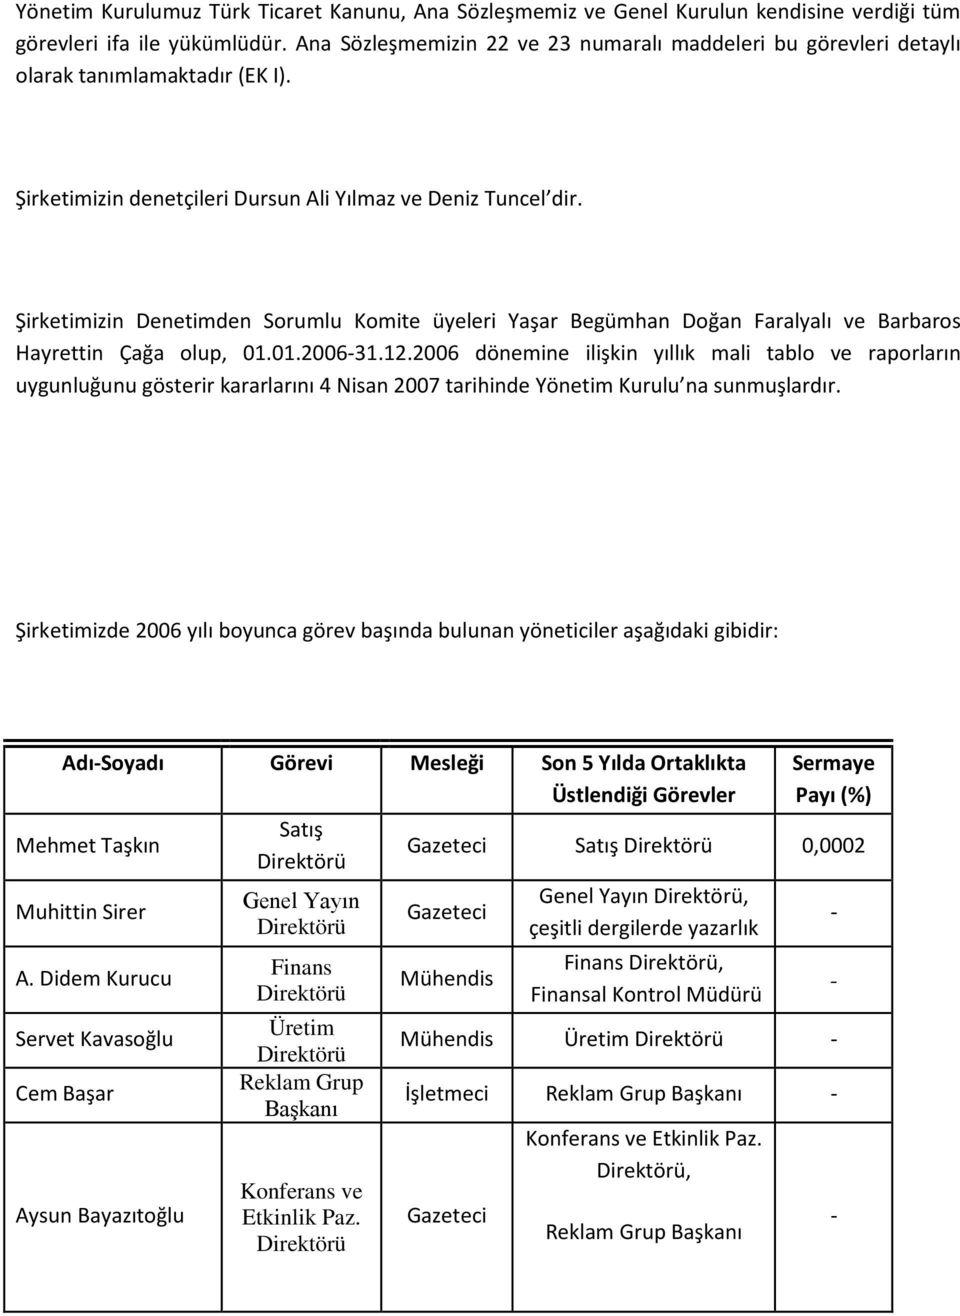 Şirketimizin Denetimden Sorumlu Komite üyeleri Yaşar Begümhan Doğan Faralyalı ve Barbaros Hayrettin Çağa olup, 01.01.2006-31.12.